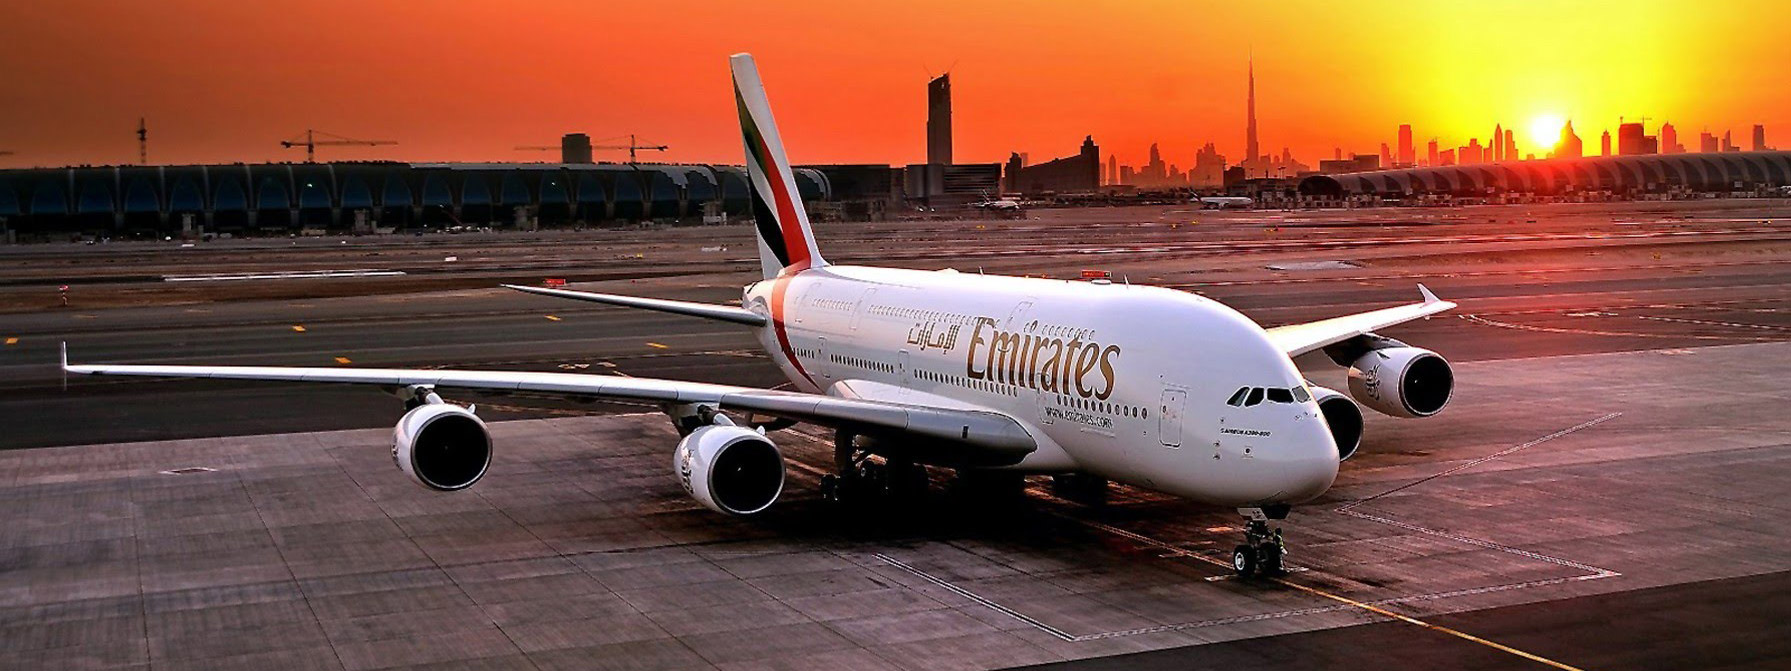 Emirates sẽ phát kính AR cho tiếp viên để biết hành khách thích gì, ghét gì